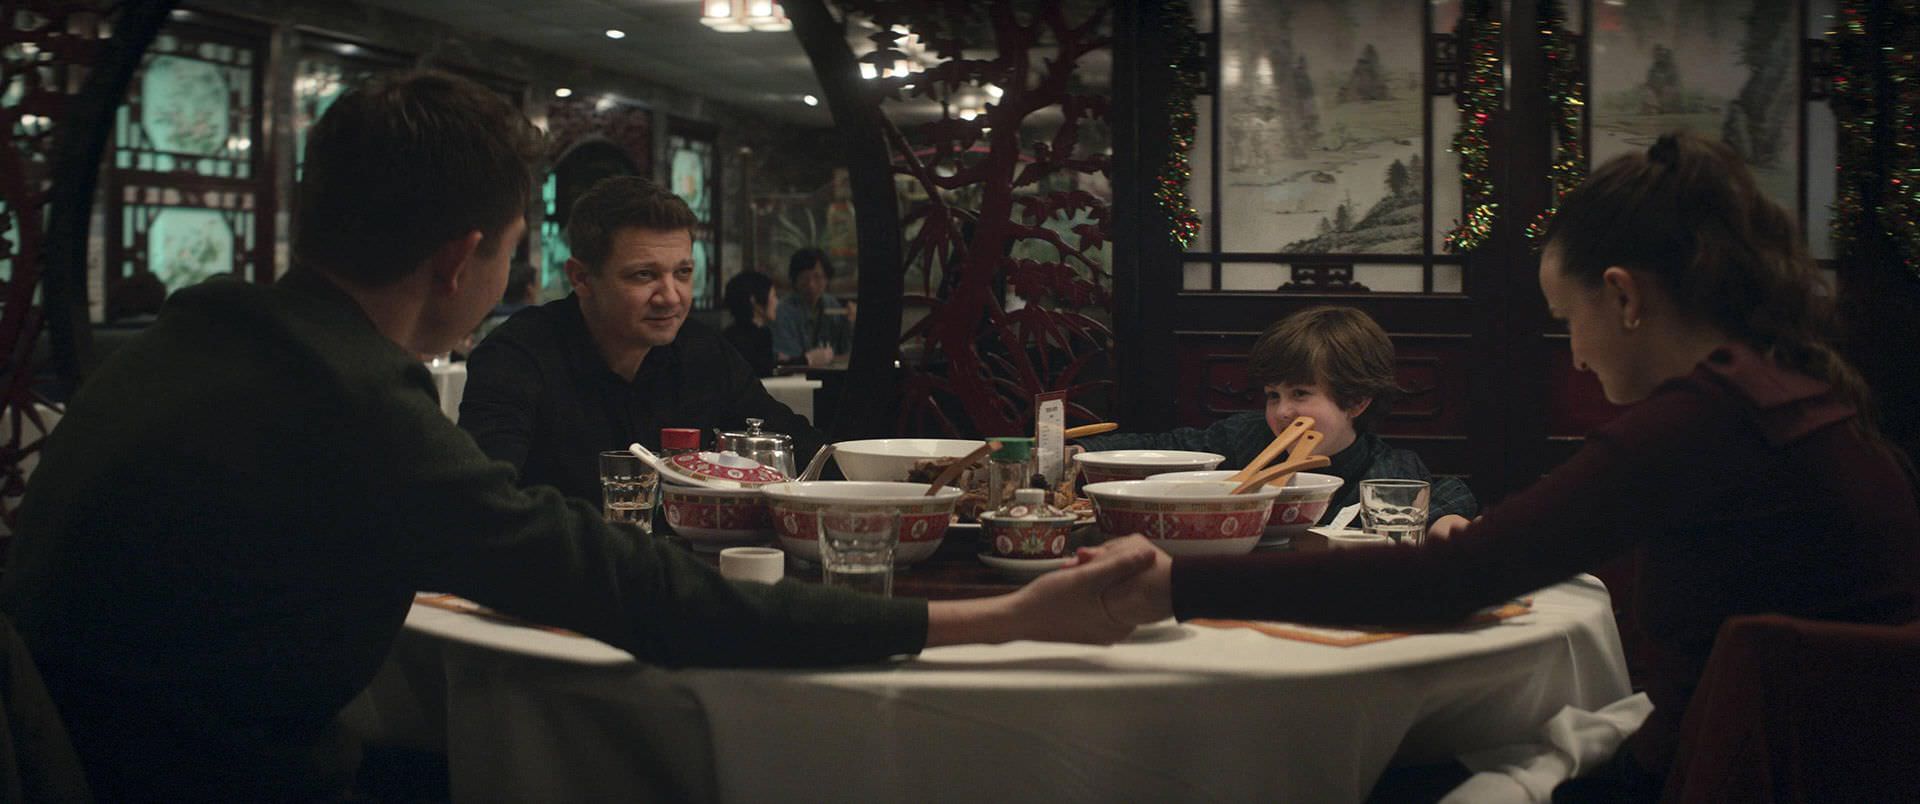 جرمی رنر در نقش کلینت بارتون در رستوران با فرزندانش در قسمت اول سریال Hawkeye